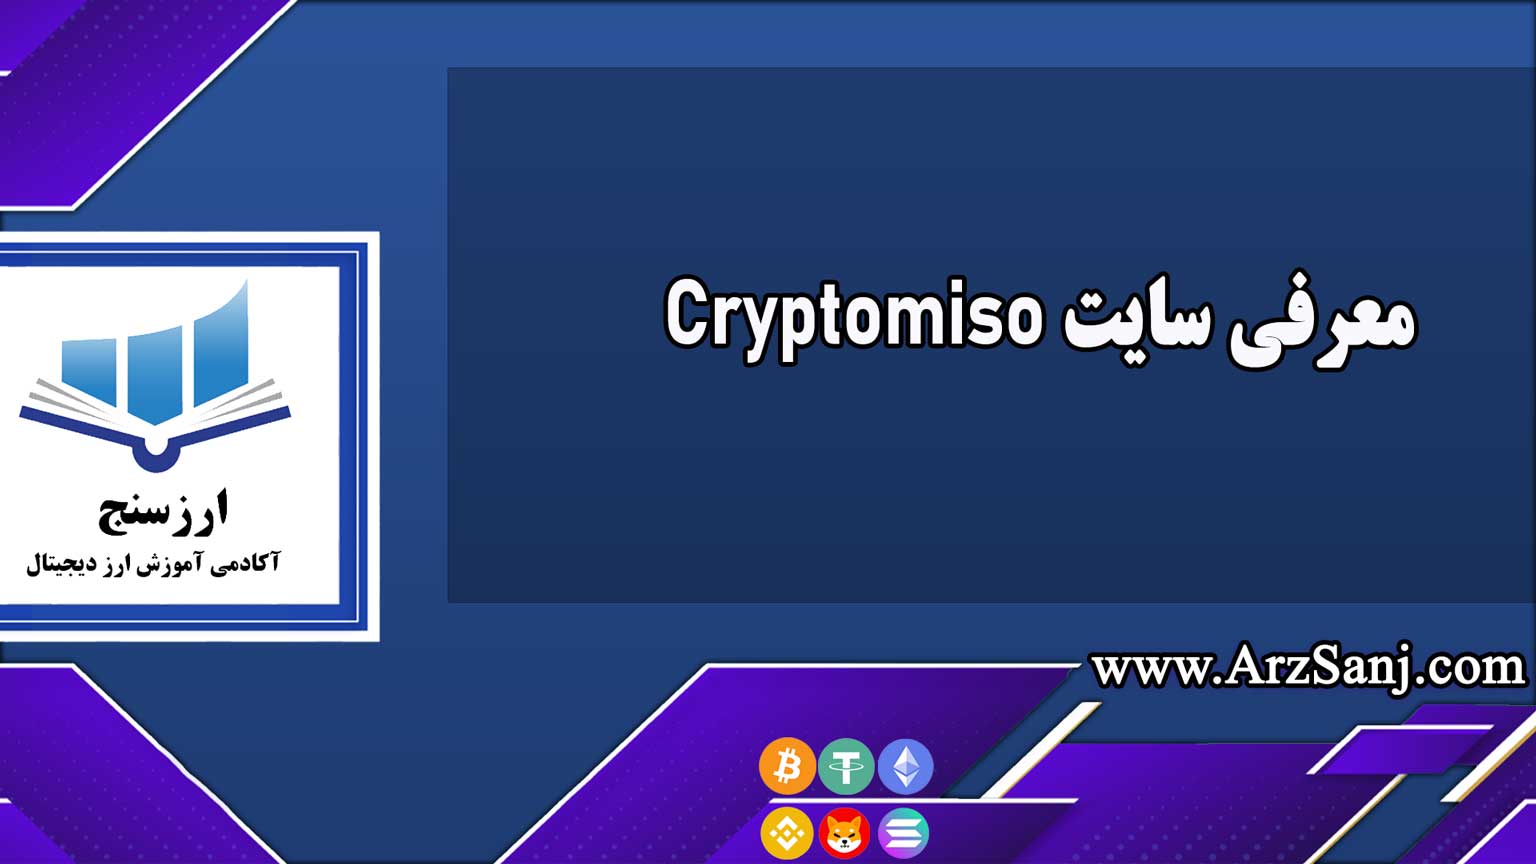 معرفی سایت Cryptomiso(بررسی فعالیت توسعه دهندگان پروژه های کریپتویی)